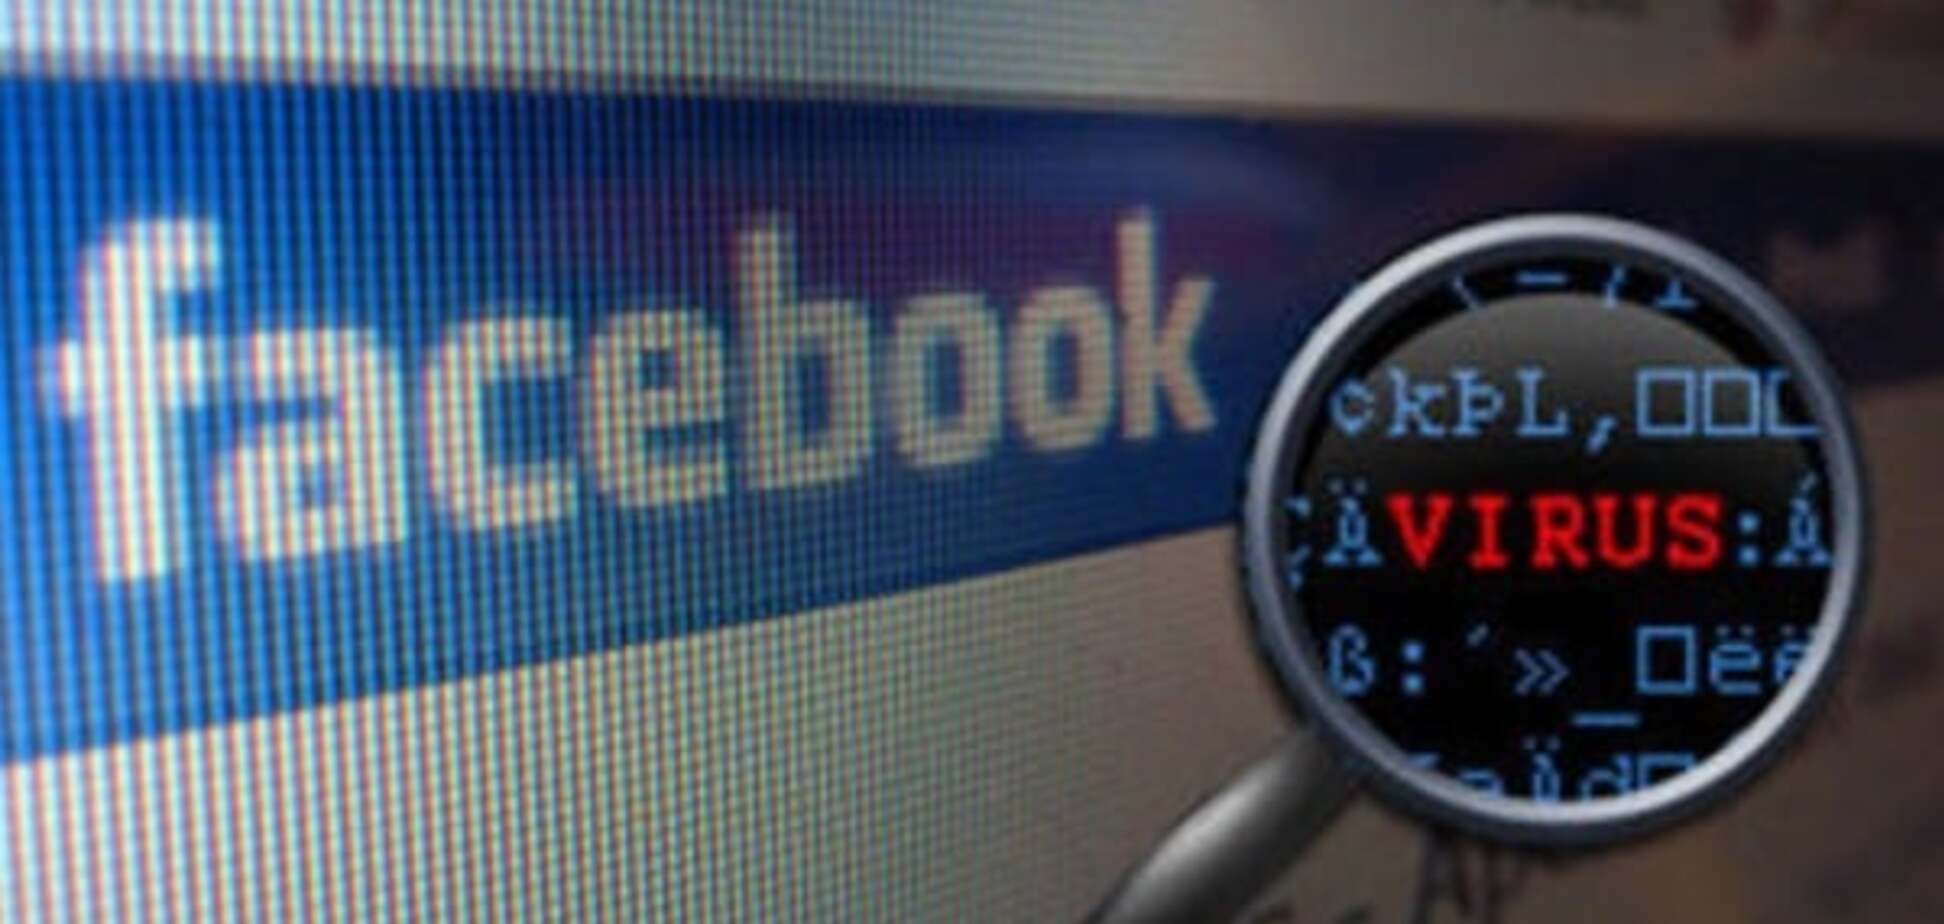 Опять за свое: пользователи Facebook подверглись хакерским атакам